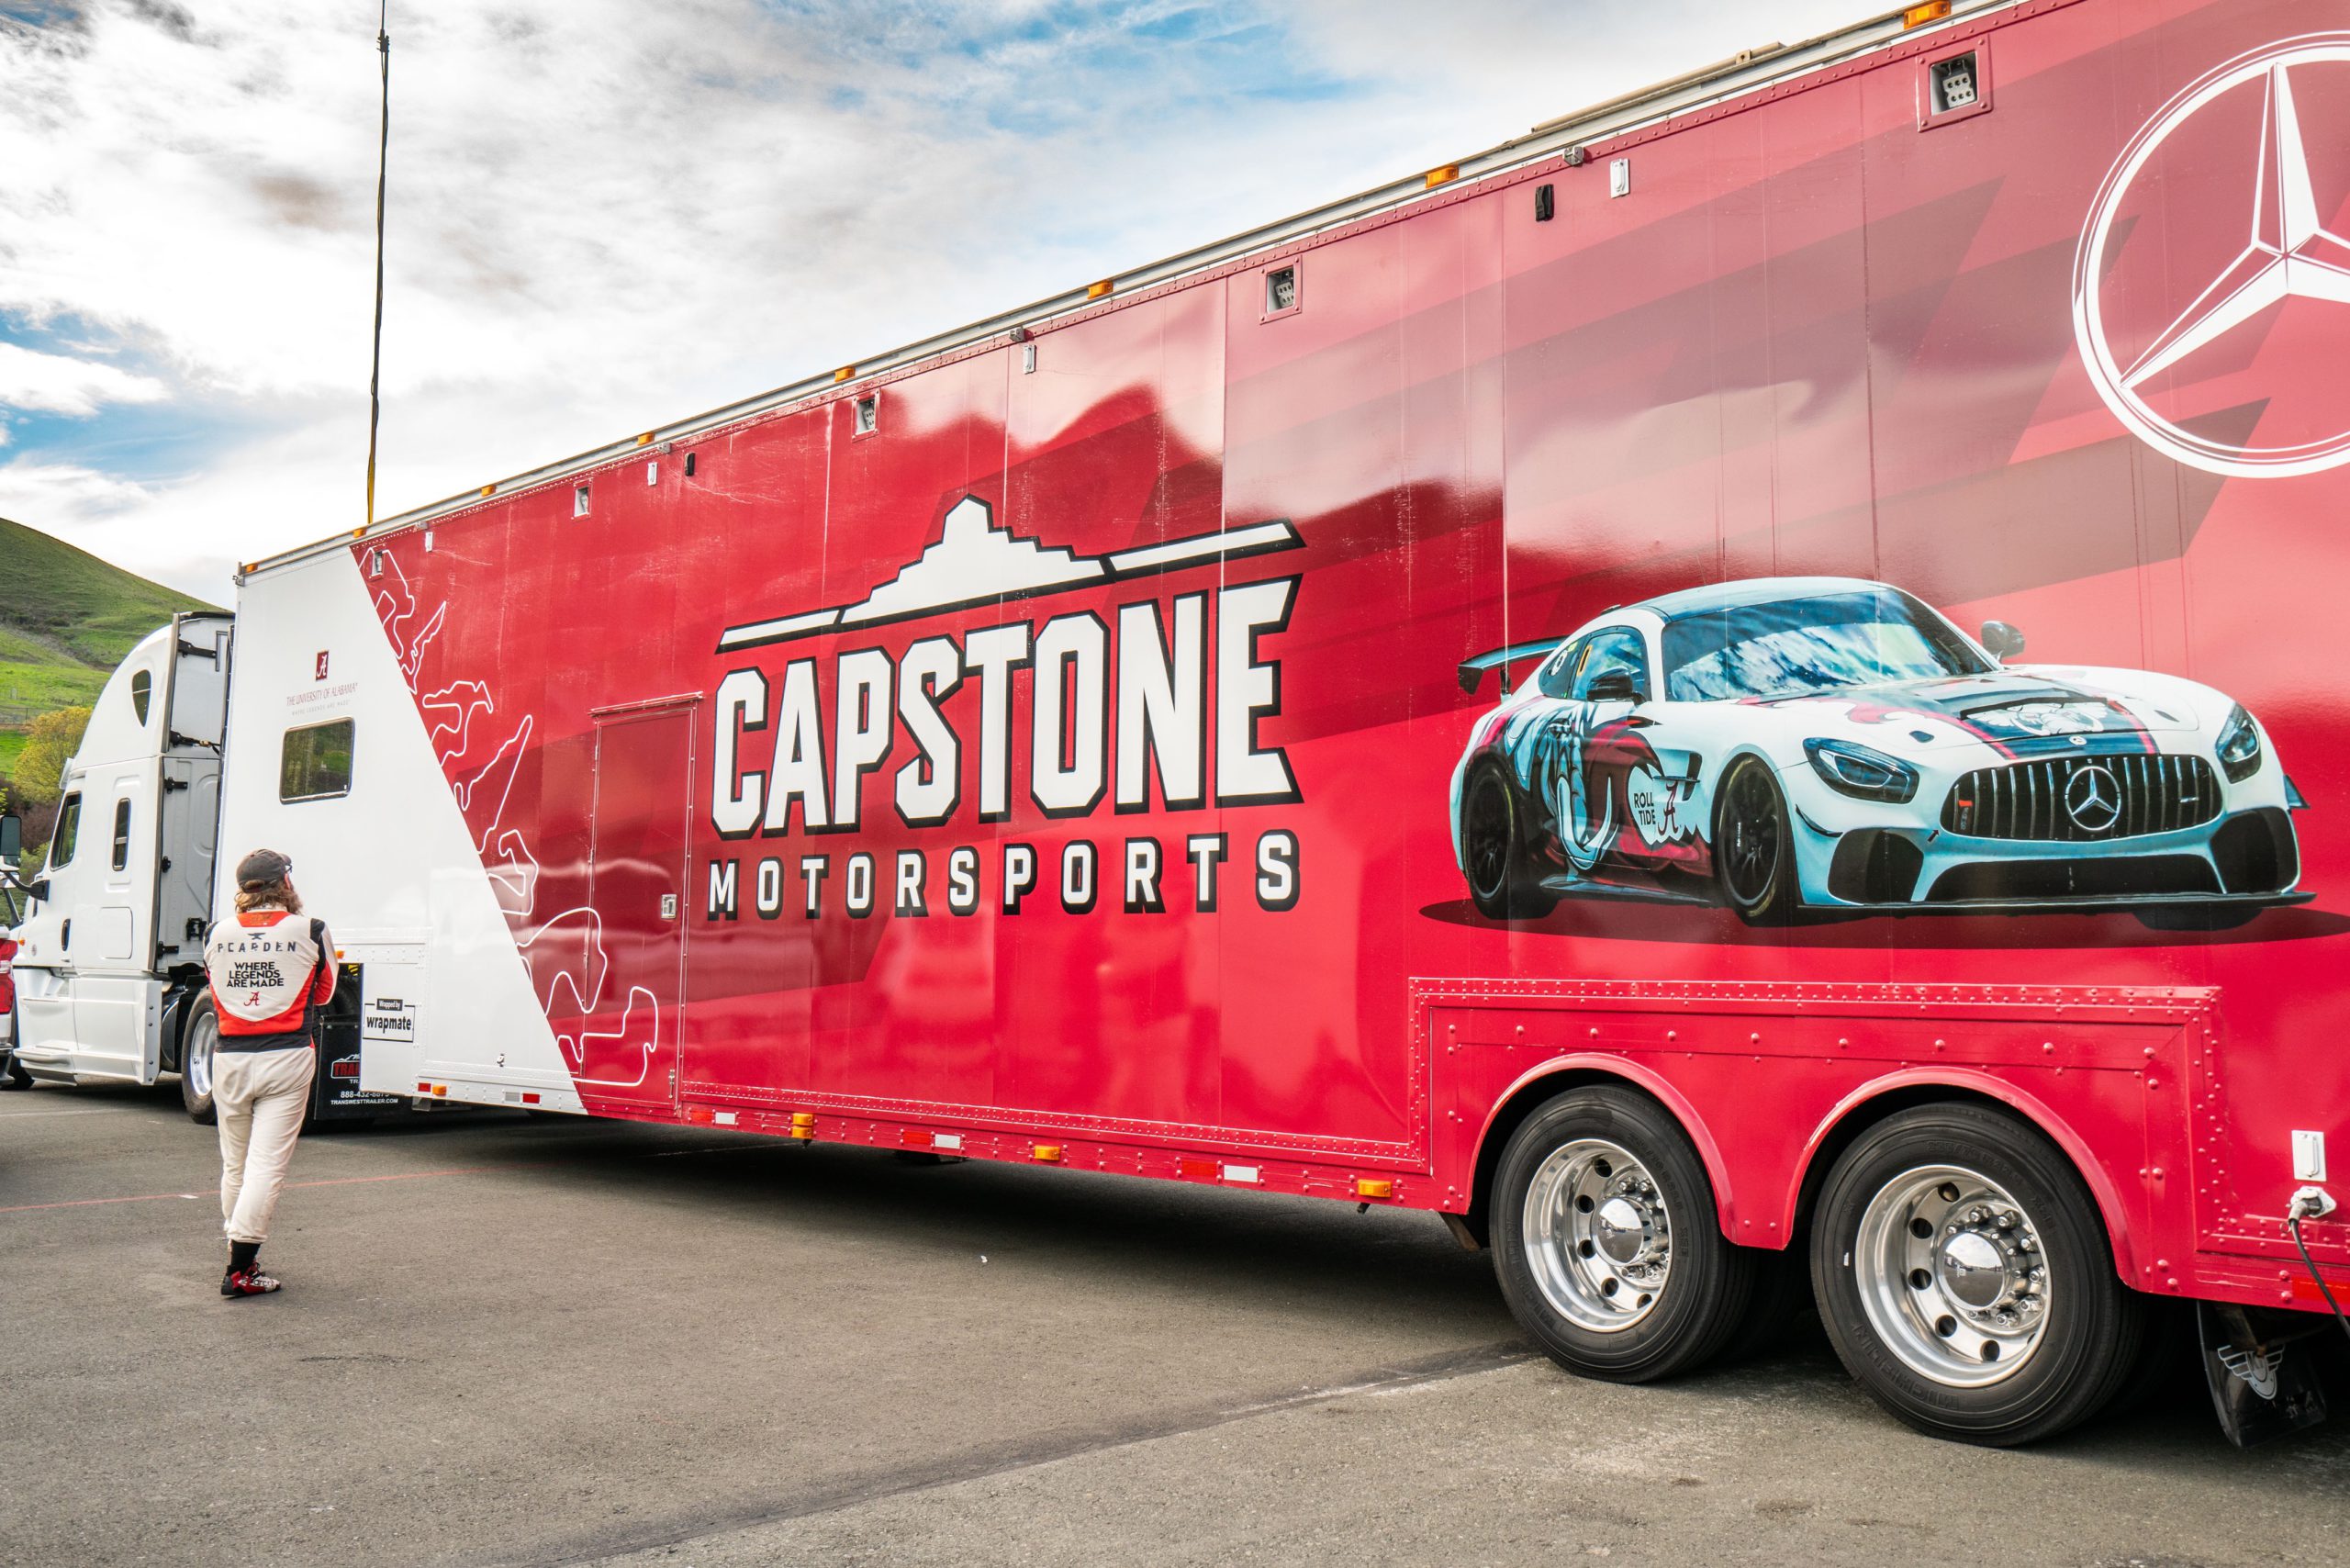 Capstone Motorsports - Hauler Trailer Wrap by Wrapmate